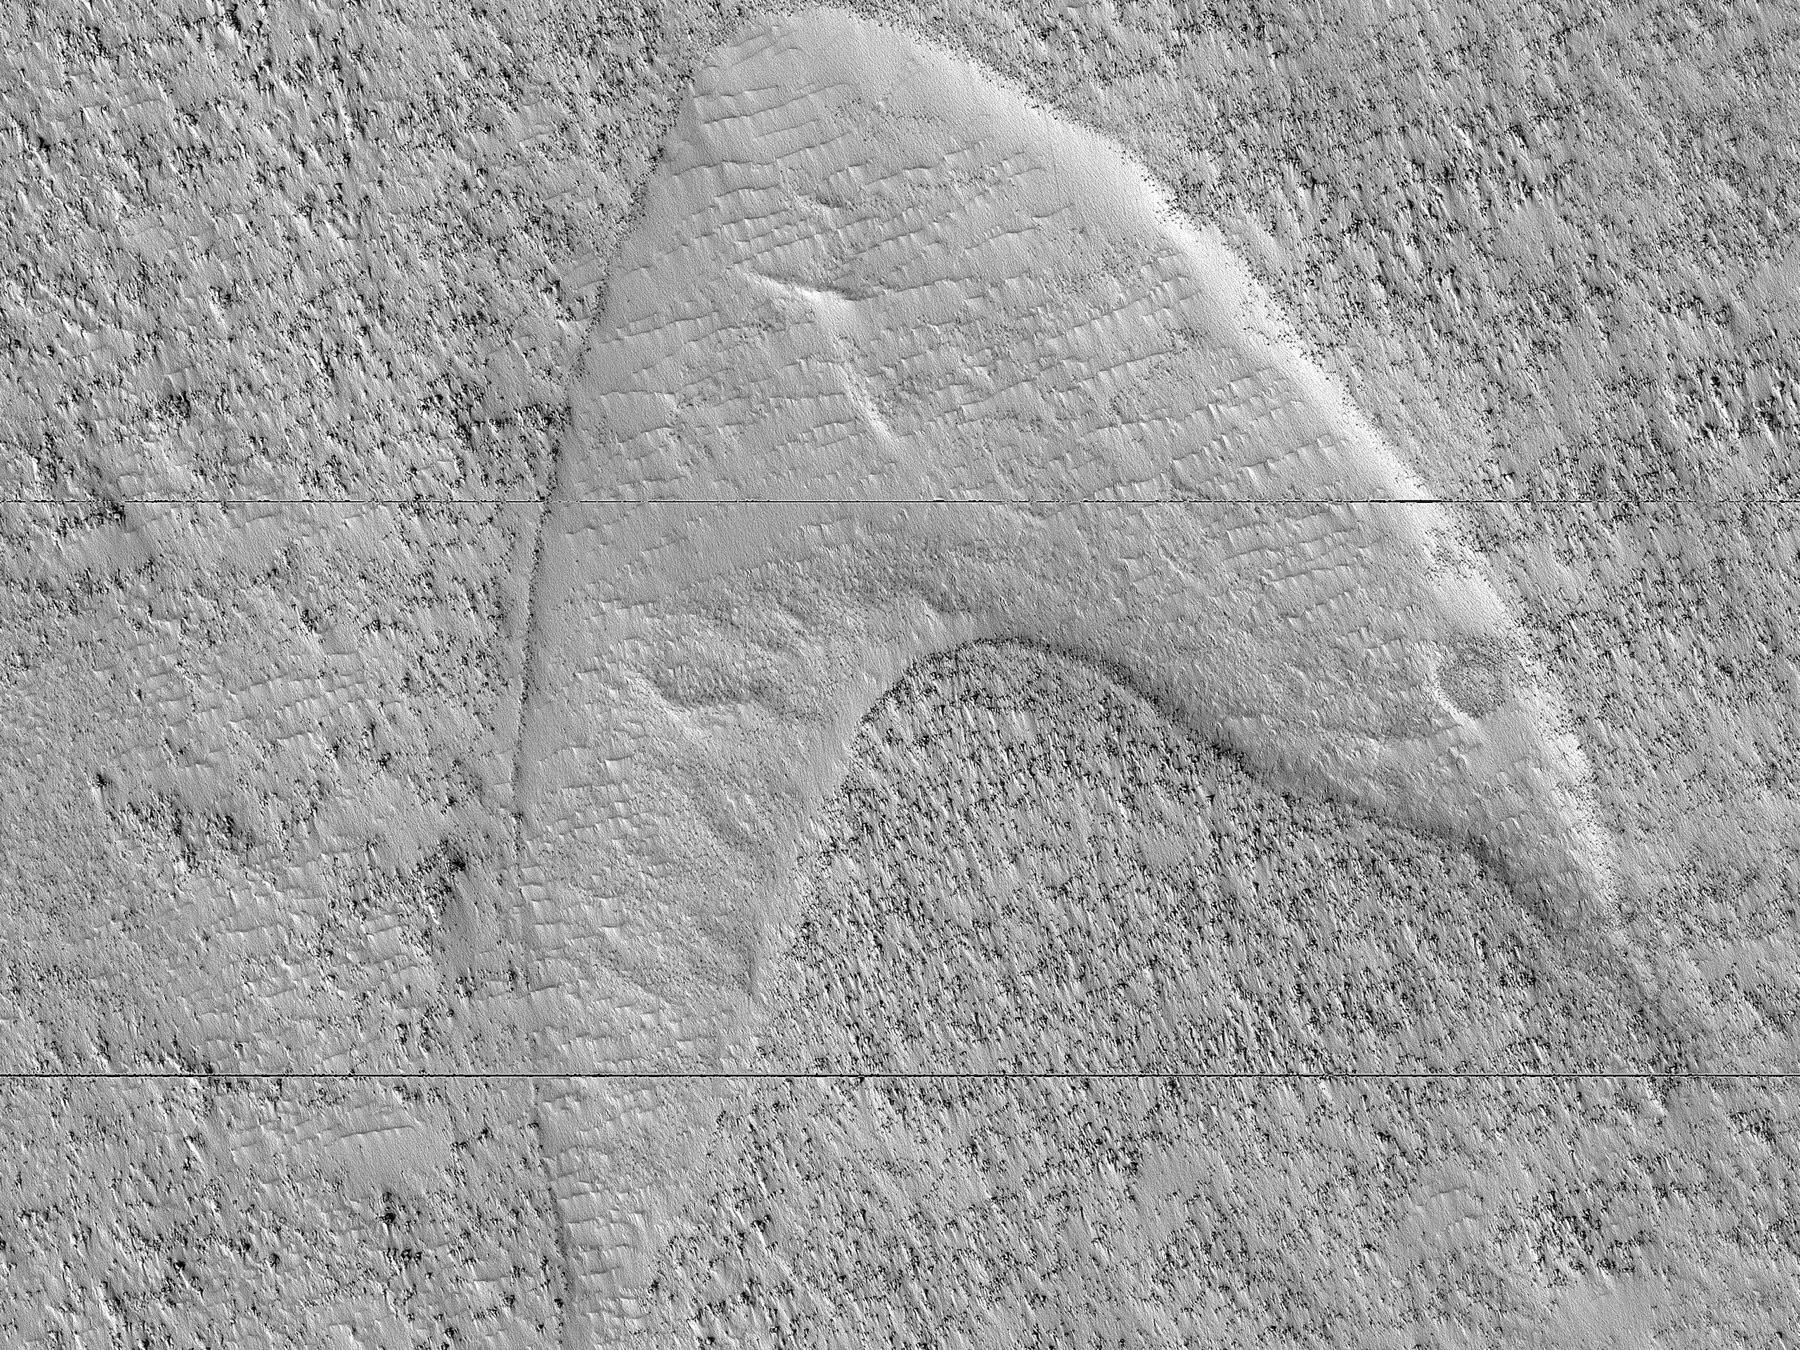 NASA spots Starfleet logo on Mars surface